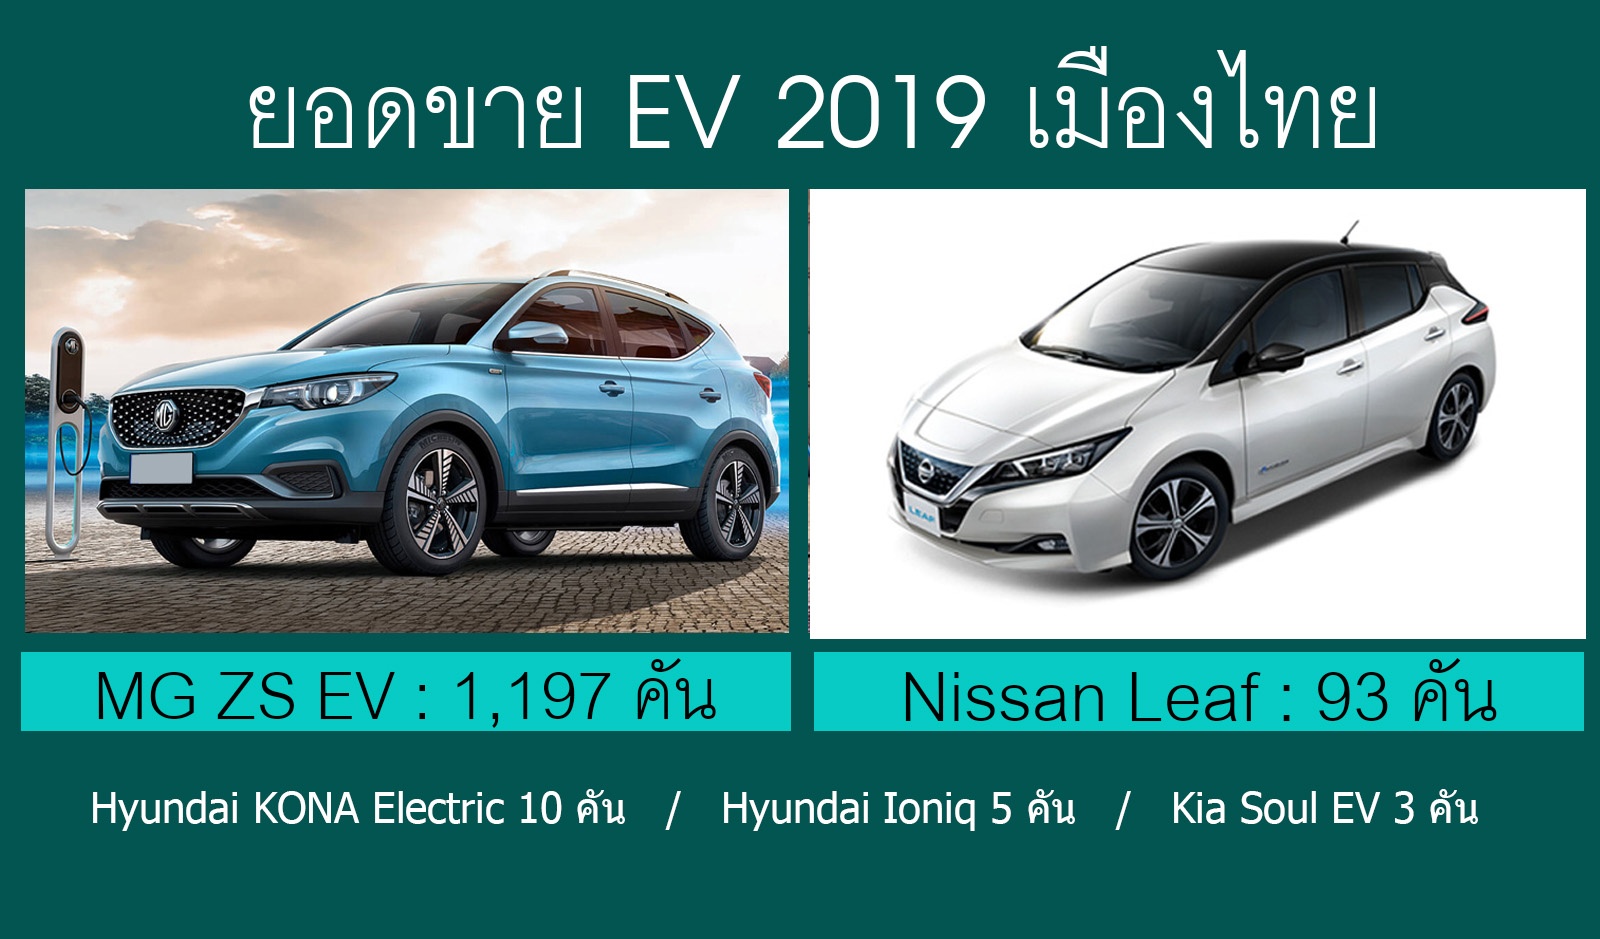 MG ZS EV ขายดีในกลุ่ม EV ปี 2019 เมืองไทย รวม 1,308 คัน